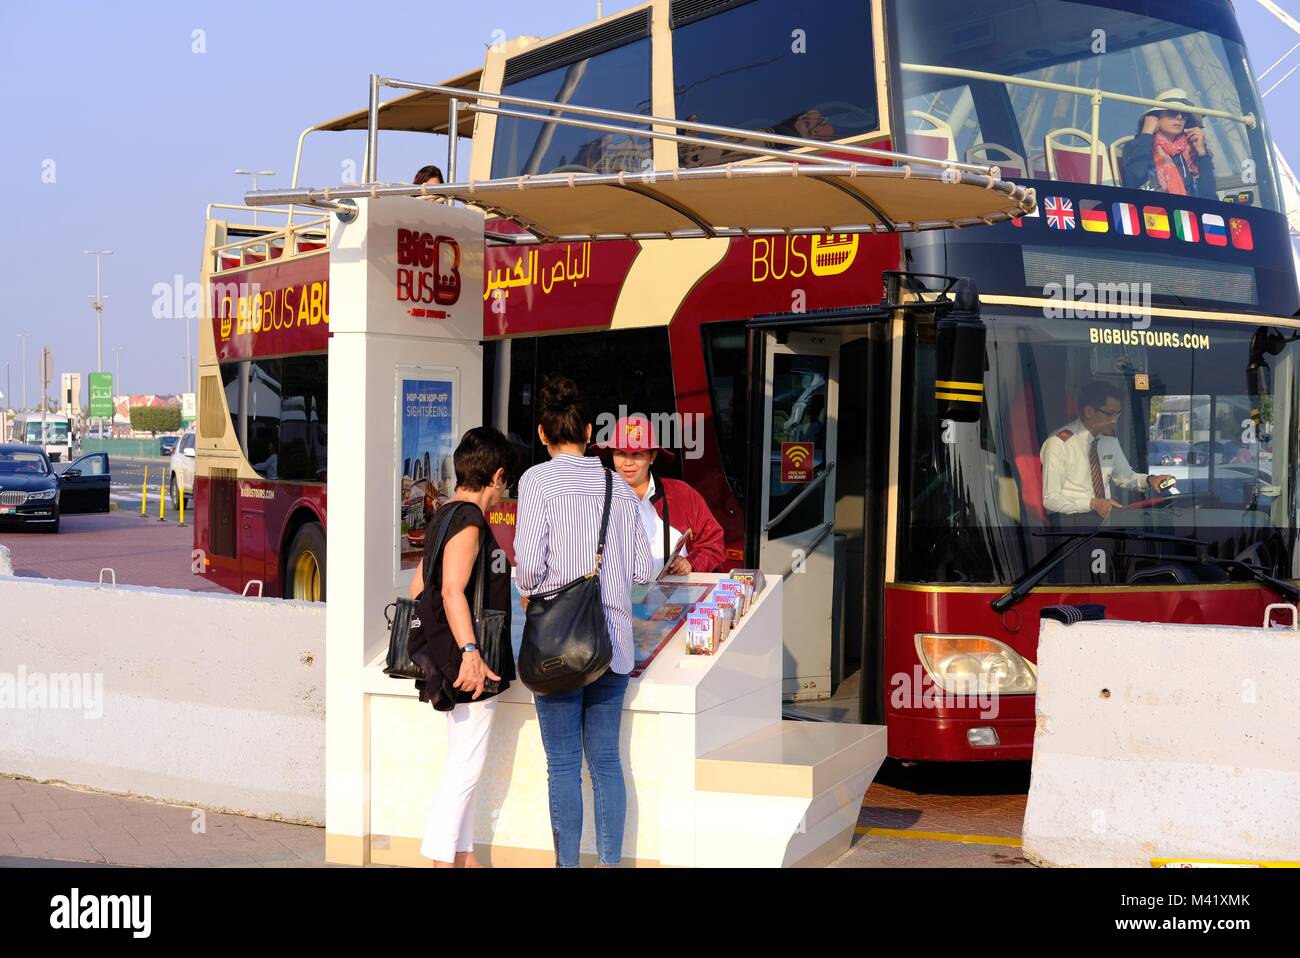 Kunden, die auf der Suche nach Informationen und Kauf von Tickets werden an die Big Bus Tour Abu Dhabi - Abu Dhabi Hop-on, Hop-off Bus Touren können Sie die Entdecken Sie die Hauptstadt der Vereinigten Arabischen Emirate zu erkunden. Stockfoto